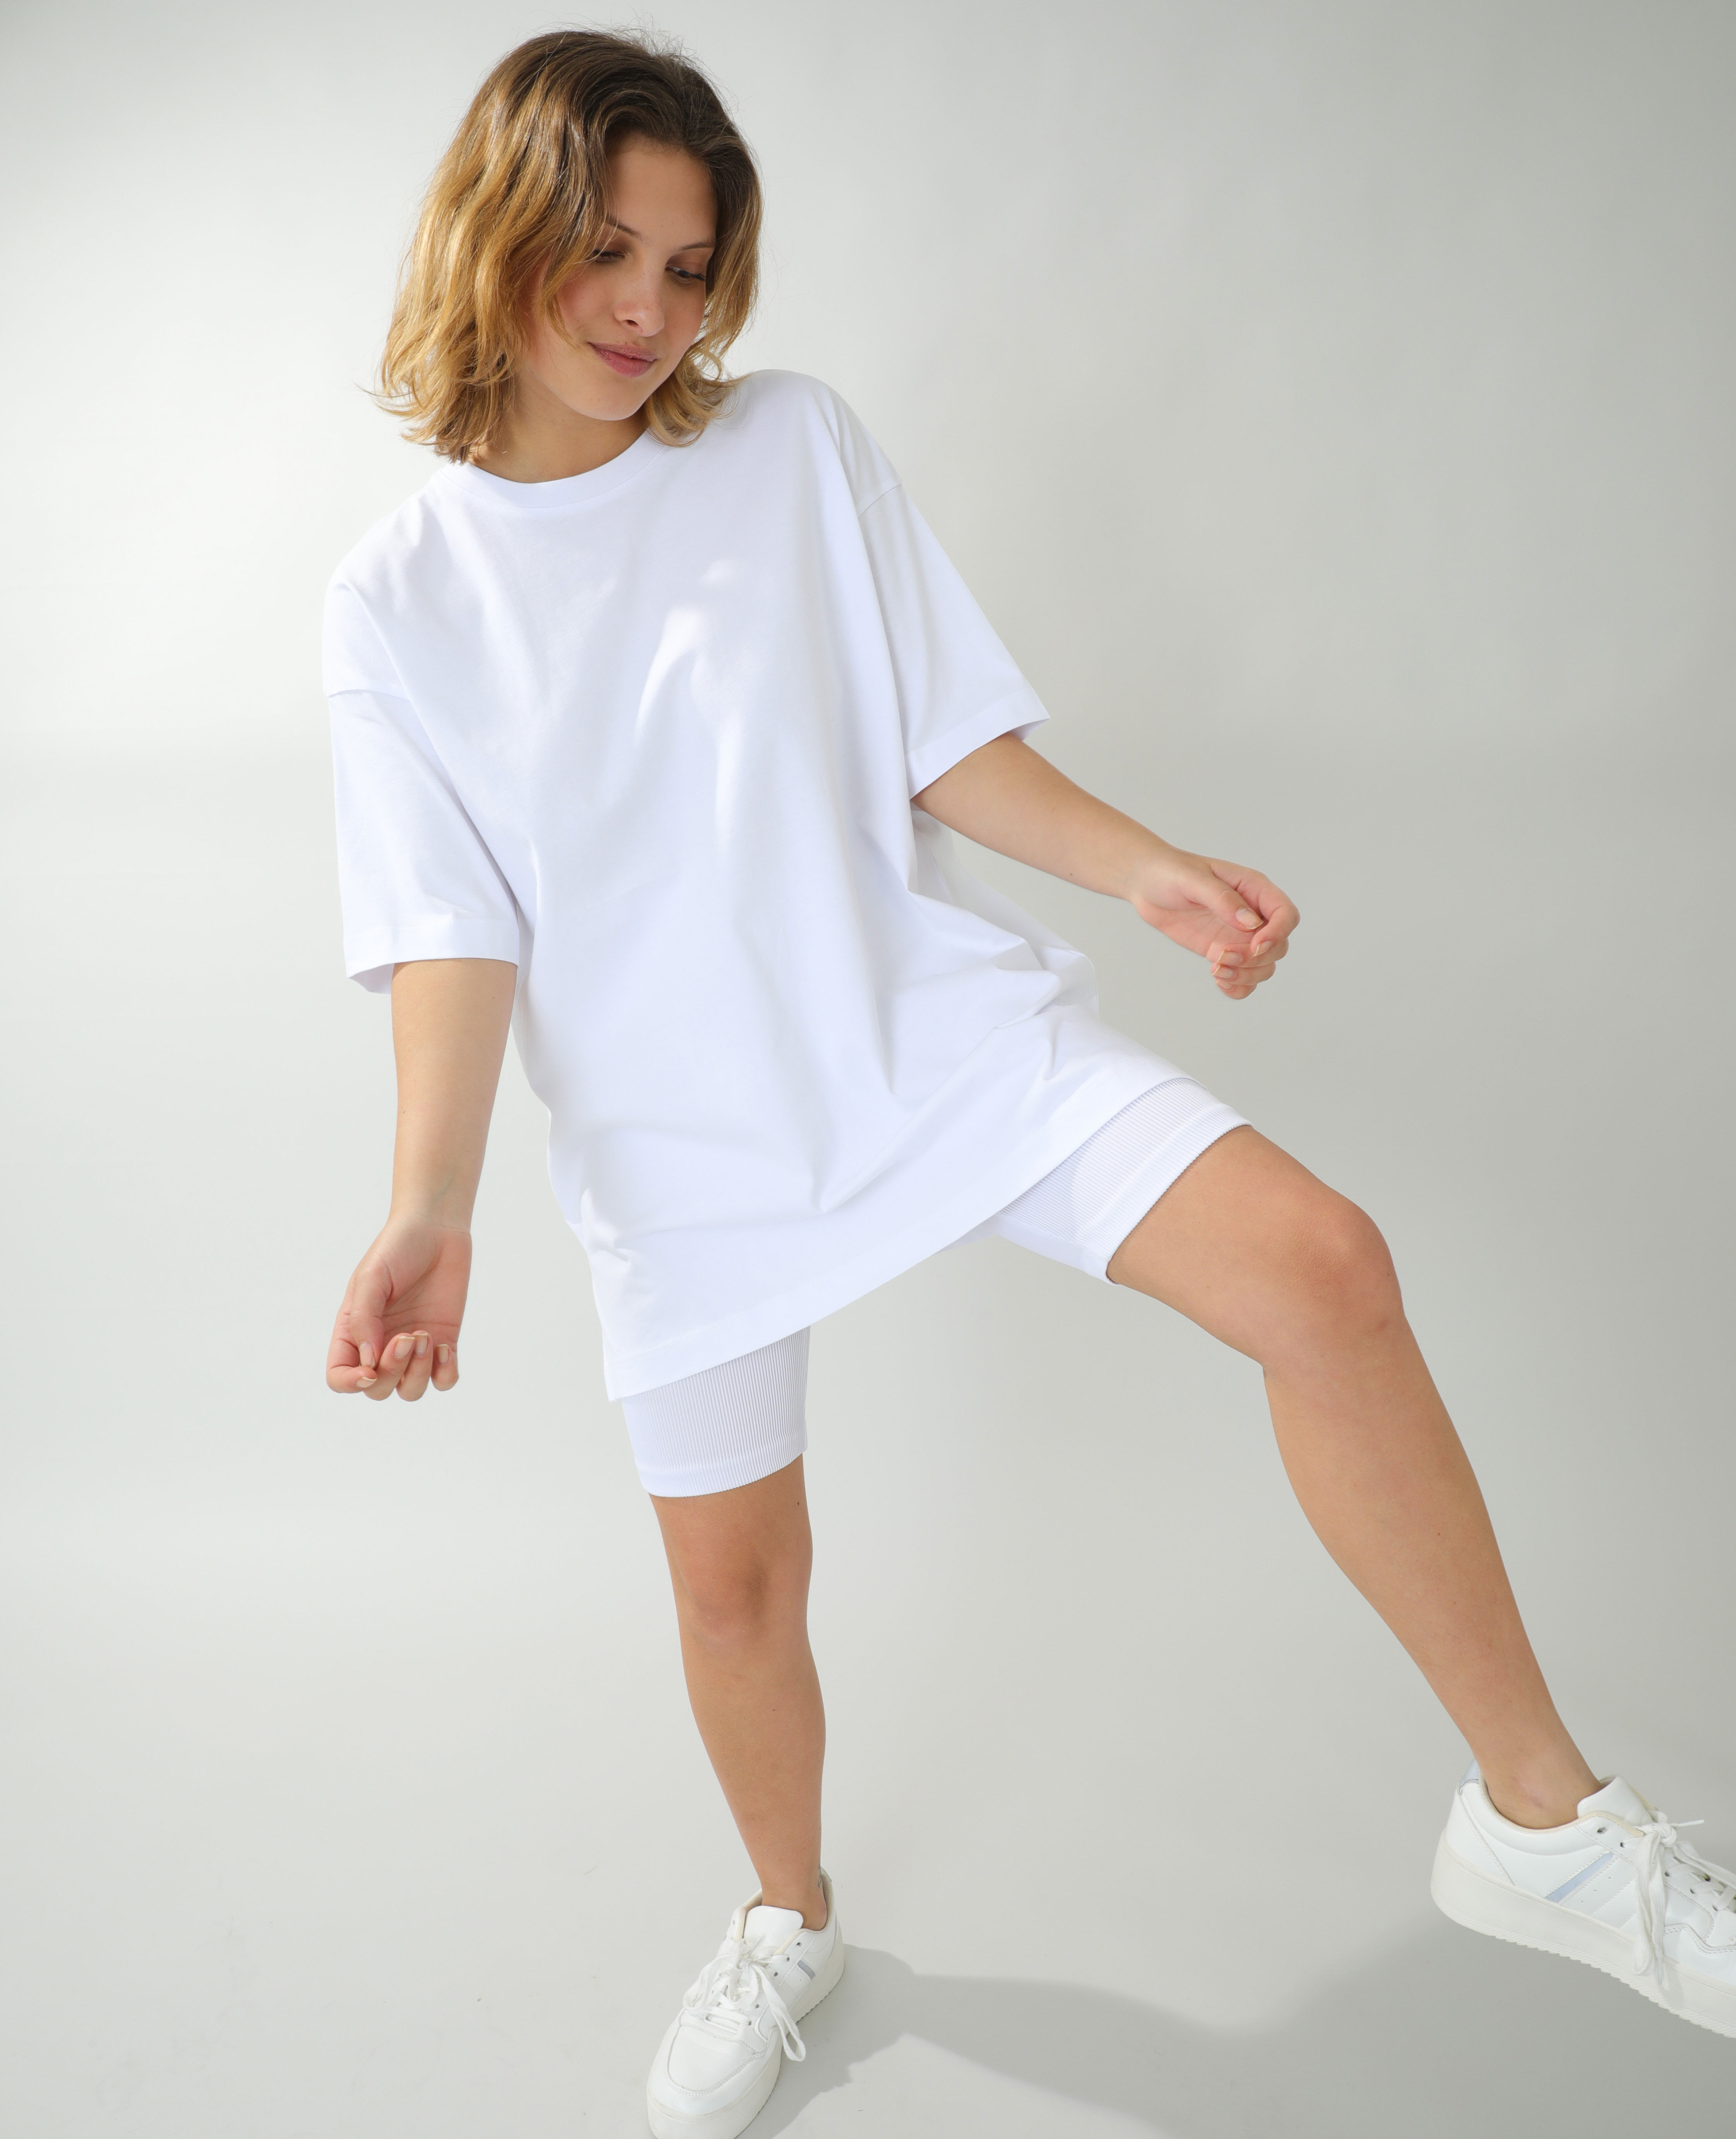 SUPVOX 20 Paires Dépaulettes à Coudre Éponge Coussinets pour Blazer T-Shirt Vêtements Blanc 